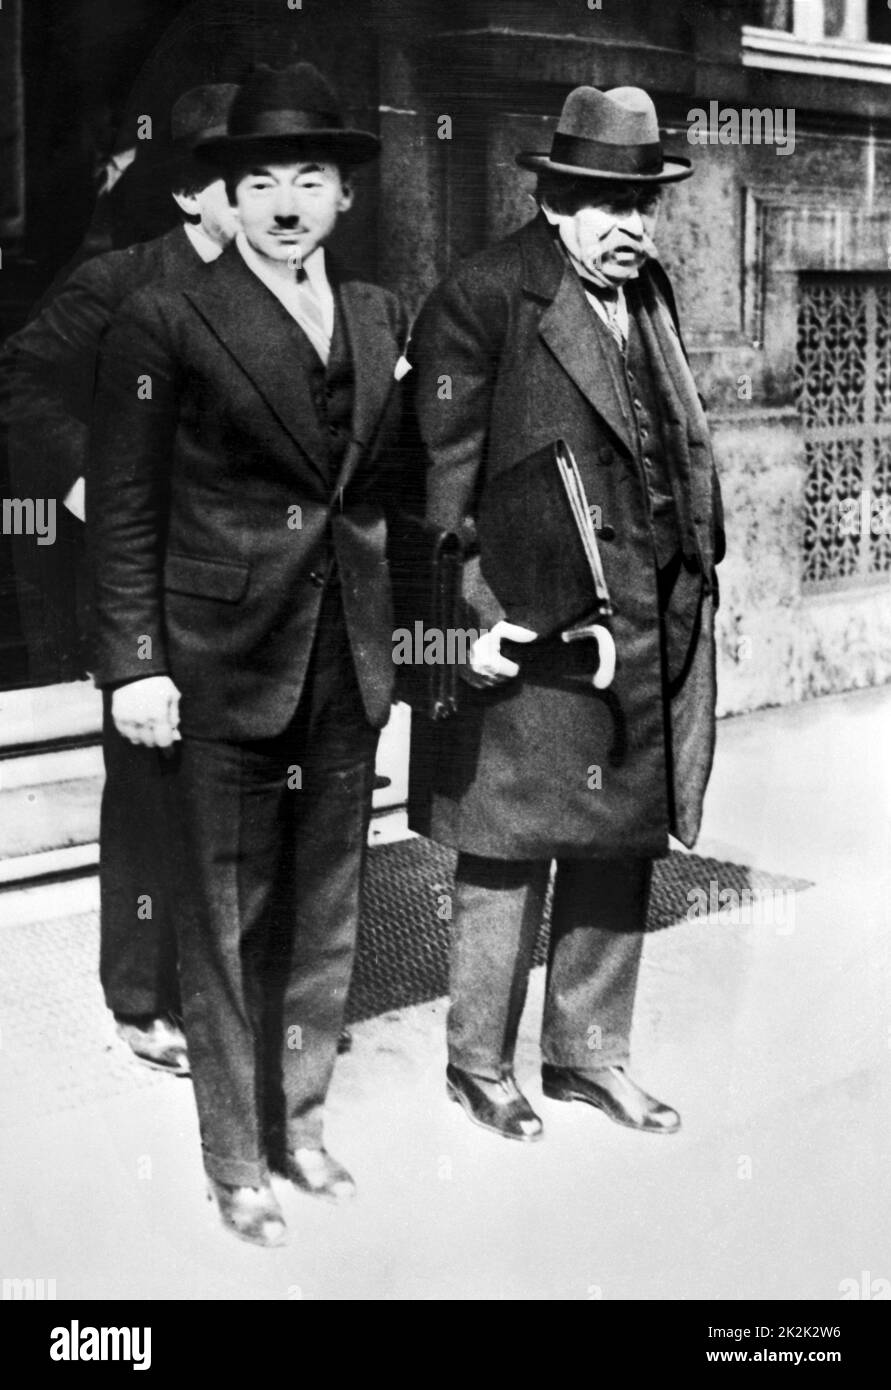 El ministro francés de Hacienda Paul Reynaud y el ministro de Asuntos Exteriores Aristide Briand, nombrados en el segundo gobierno de Tardieu bajo la presidencia de Gaston Doumergue. París, 1930 Foto de stock